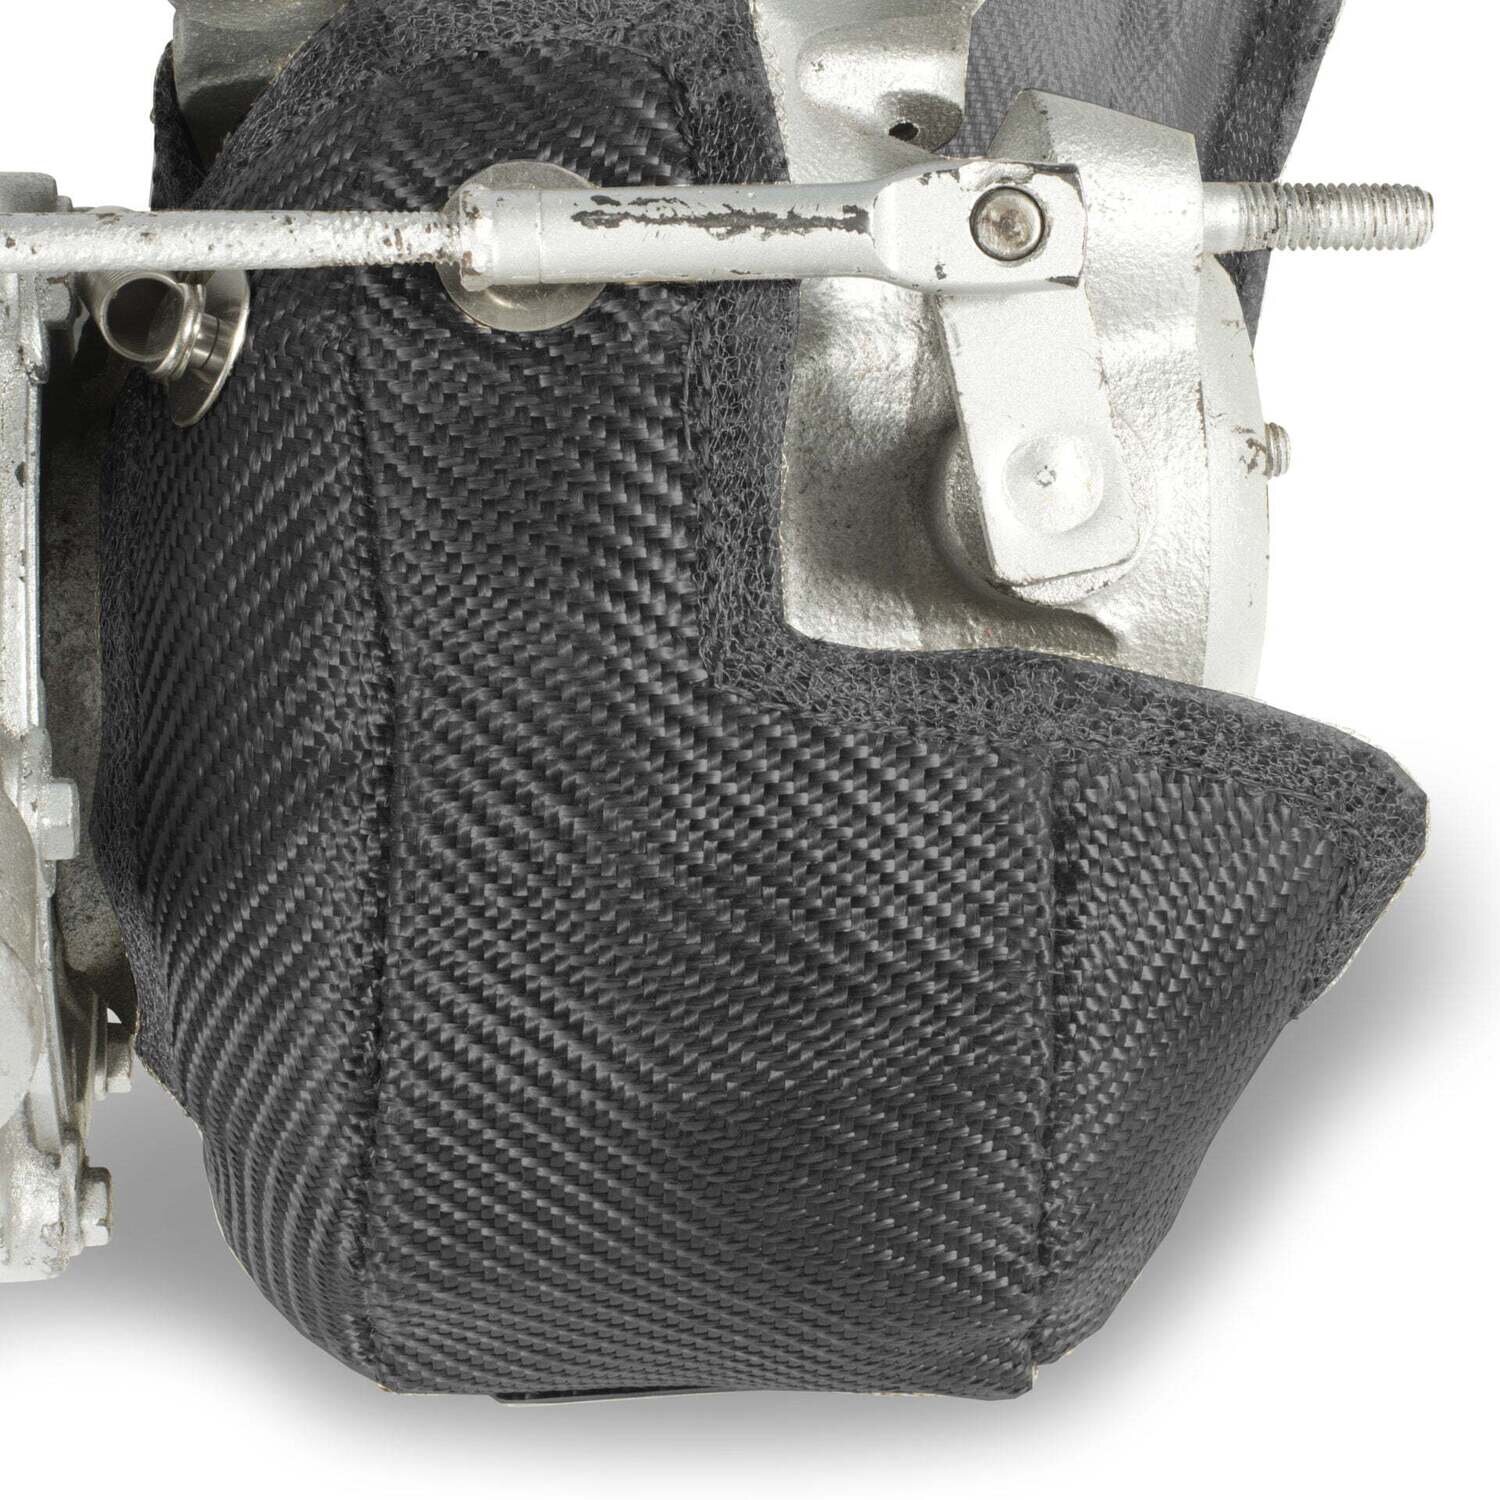 Borg Warner kkk K04-49 Turbo Blanket - Carbon Fibre